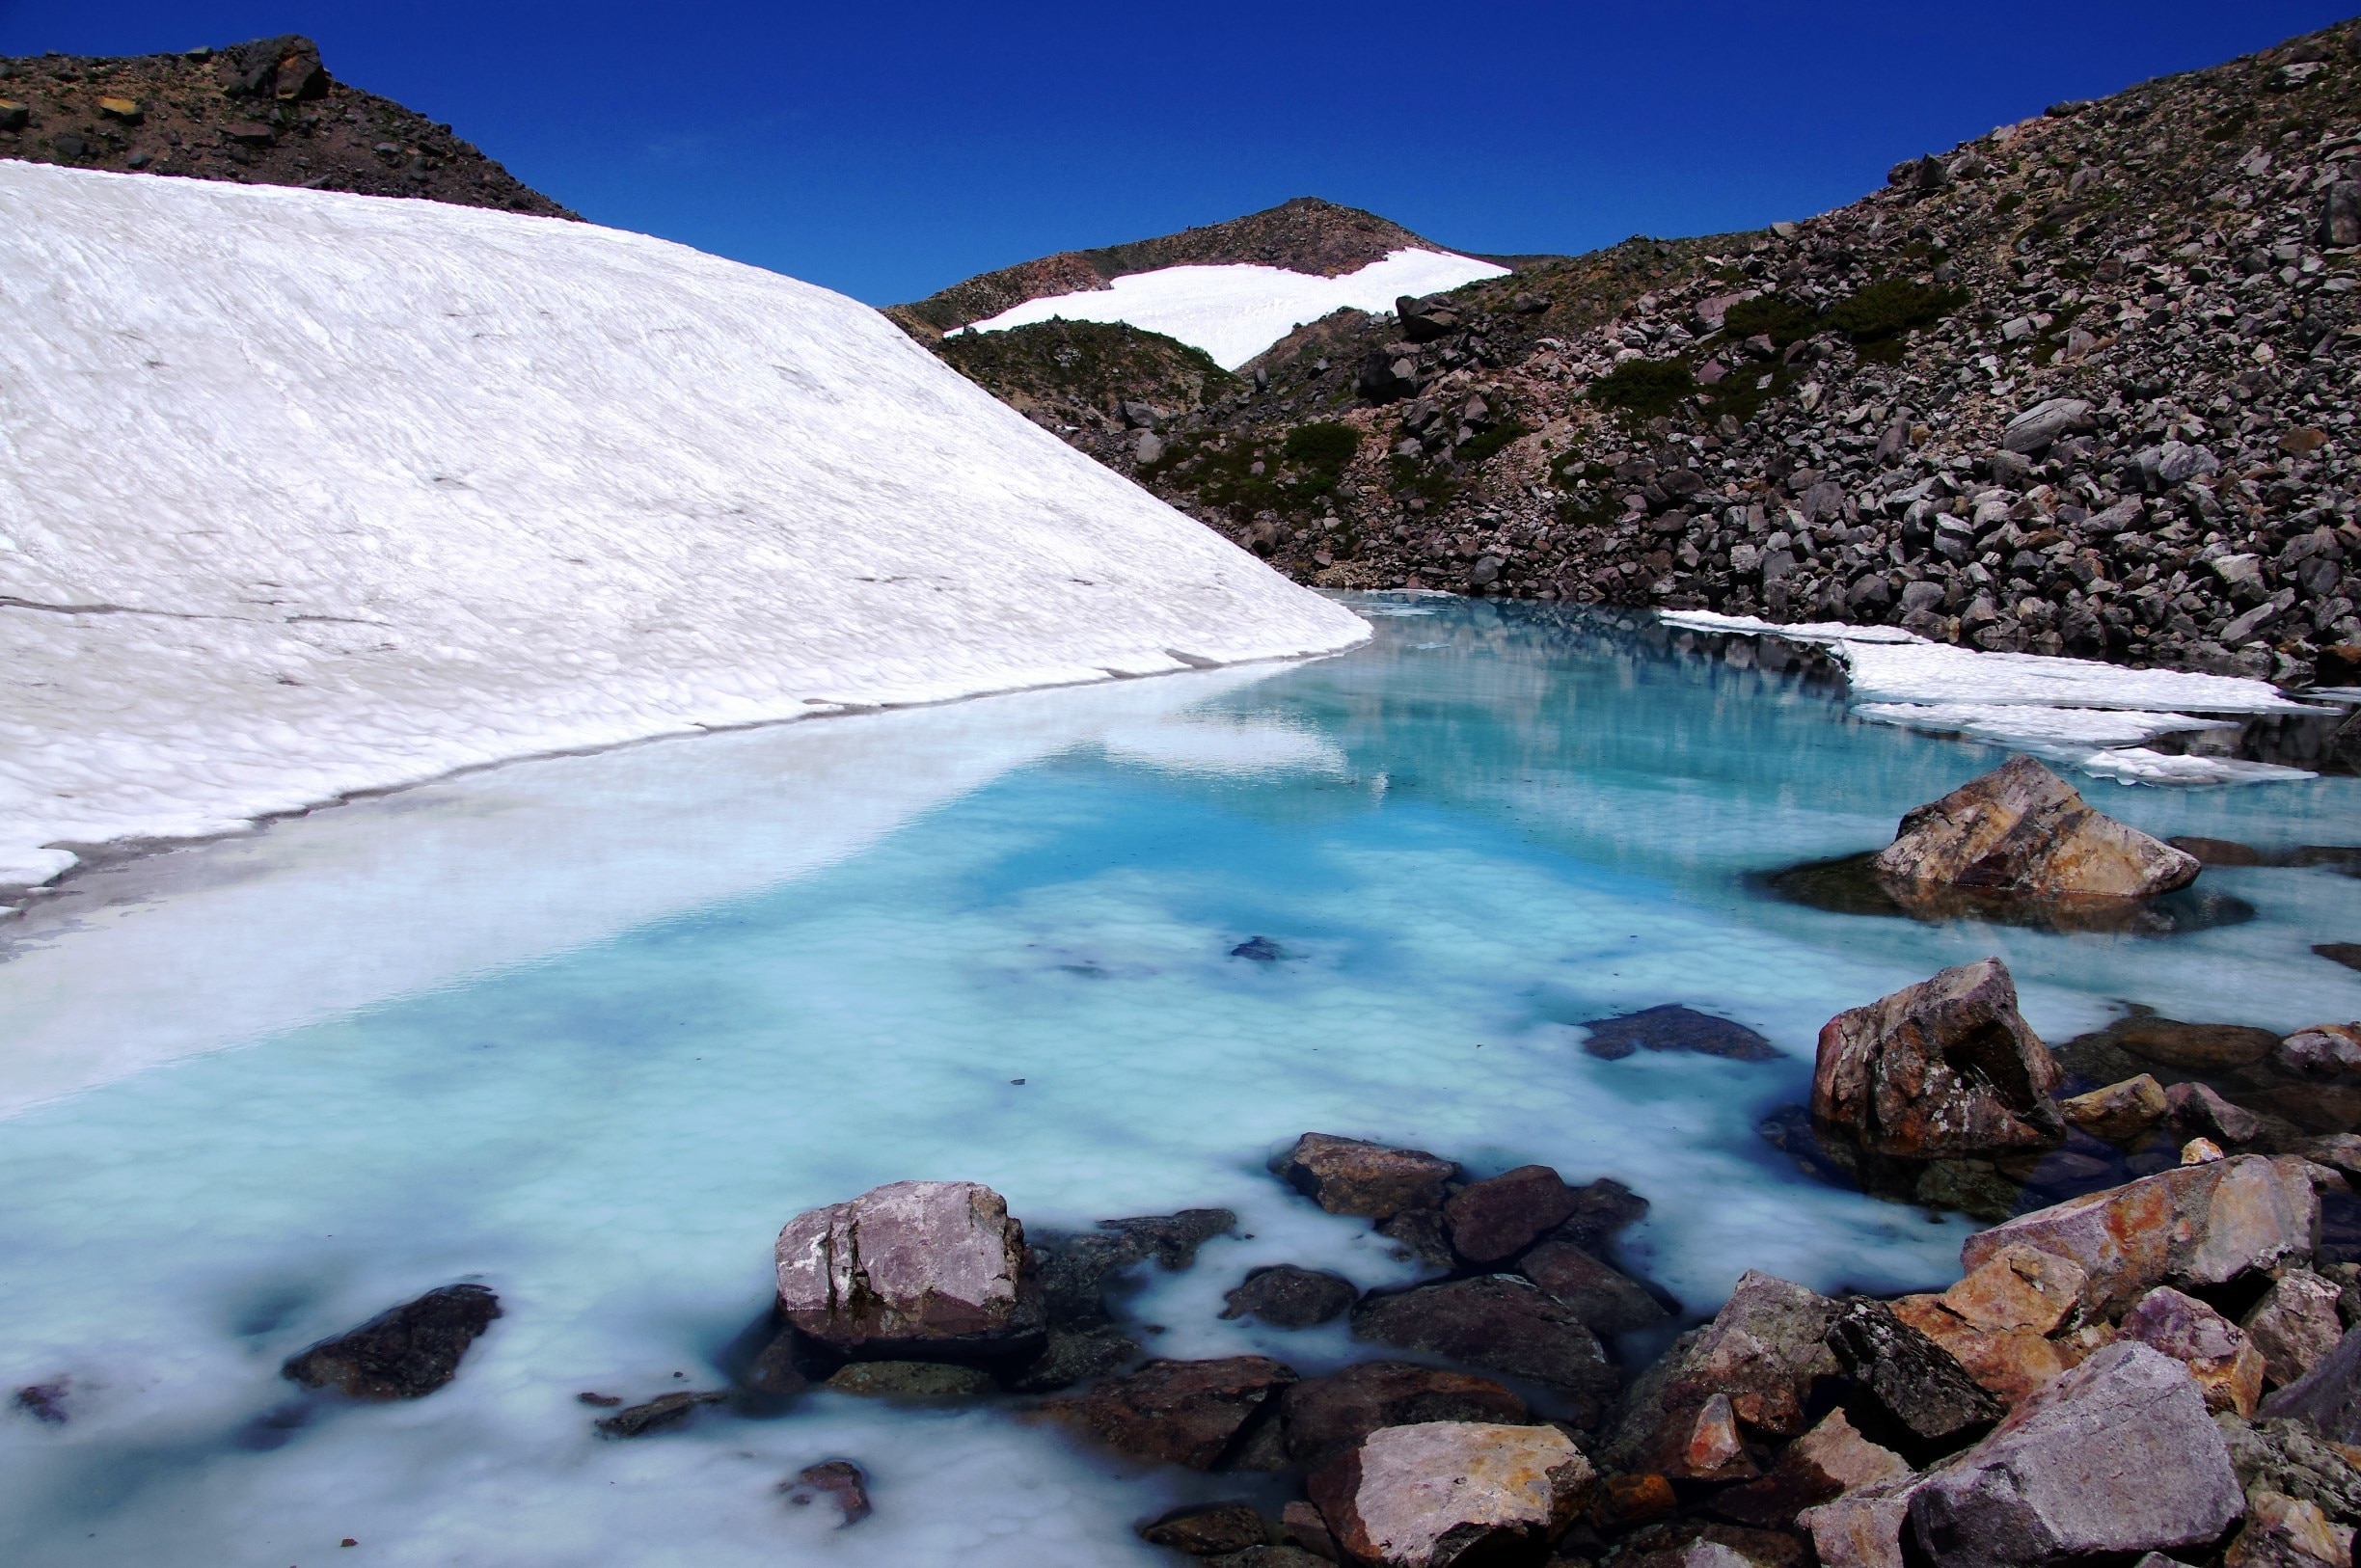 Mt.Hakusan(2,702m)
Blue pond near the summit

#BVSblue